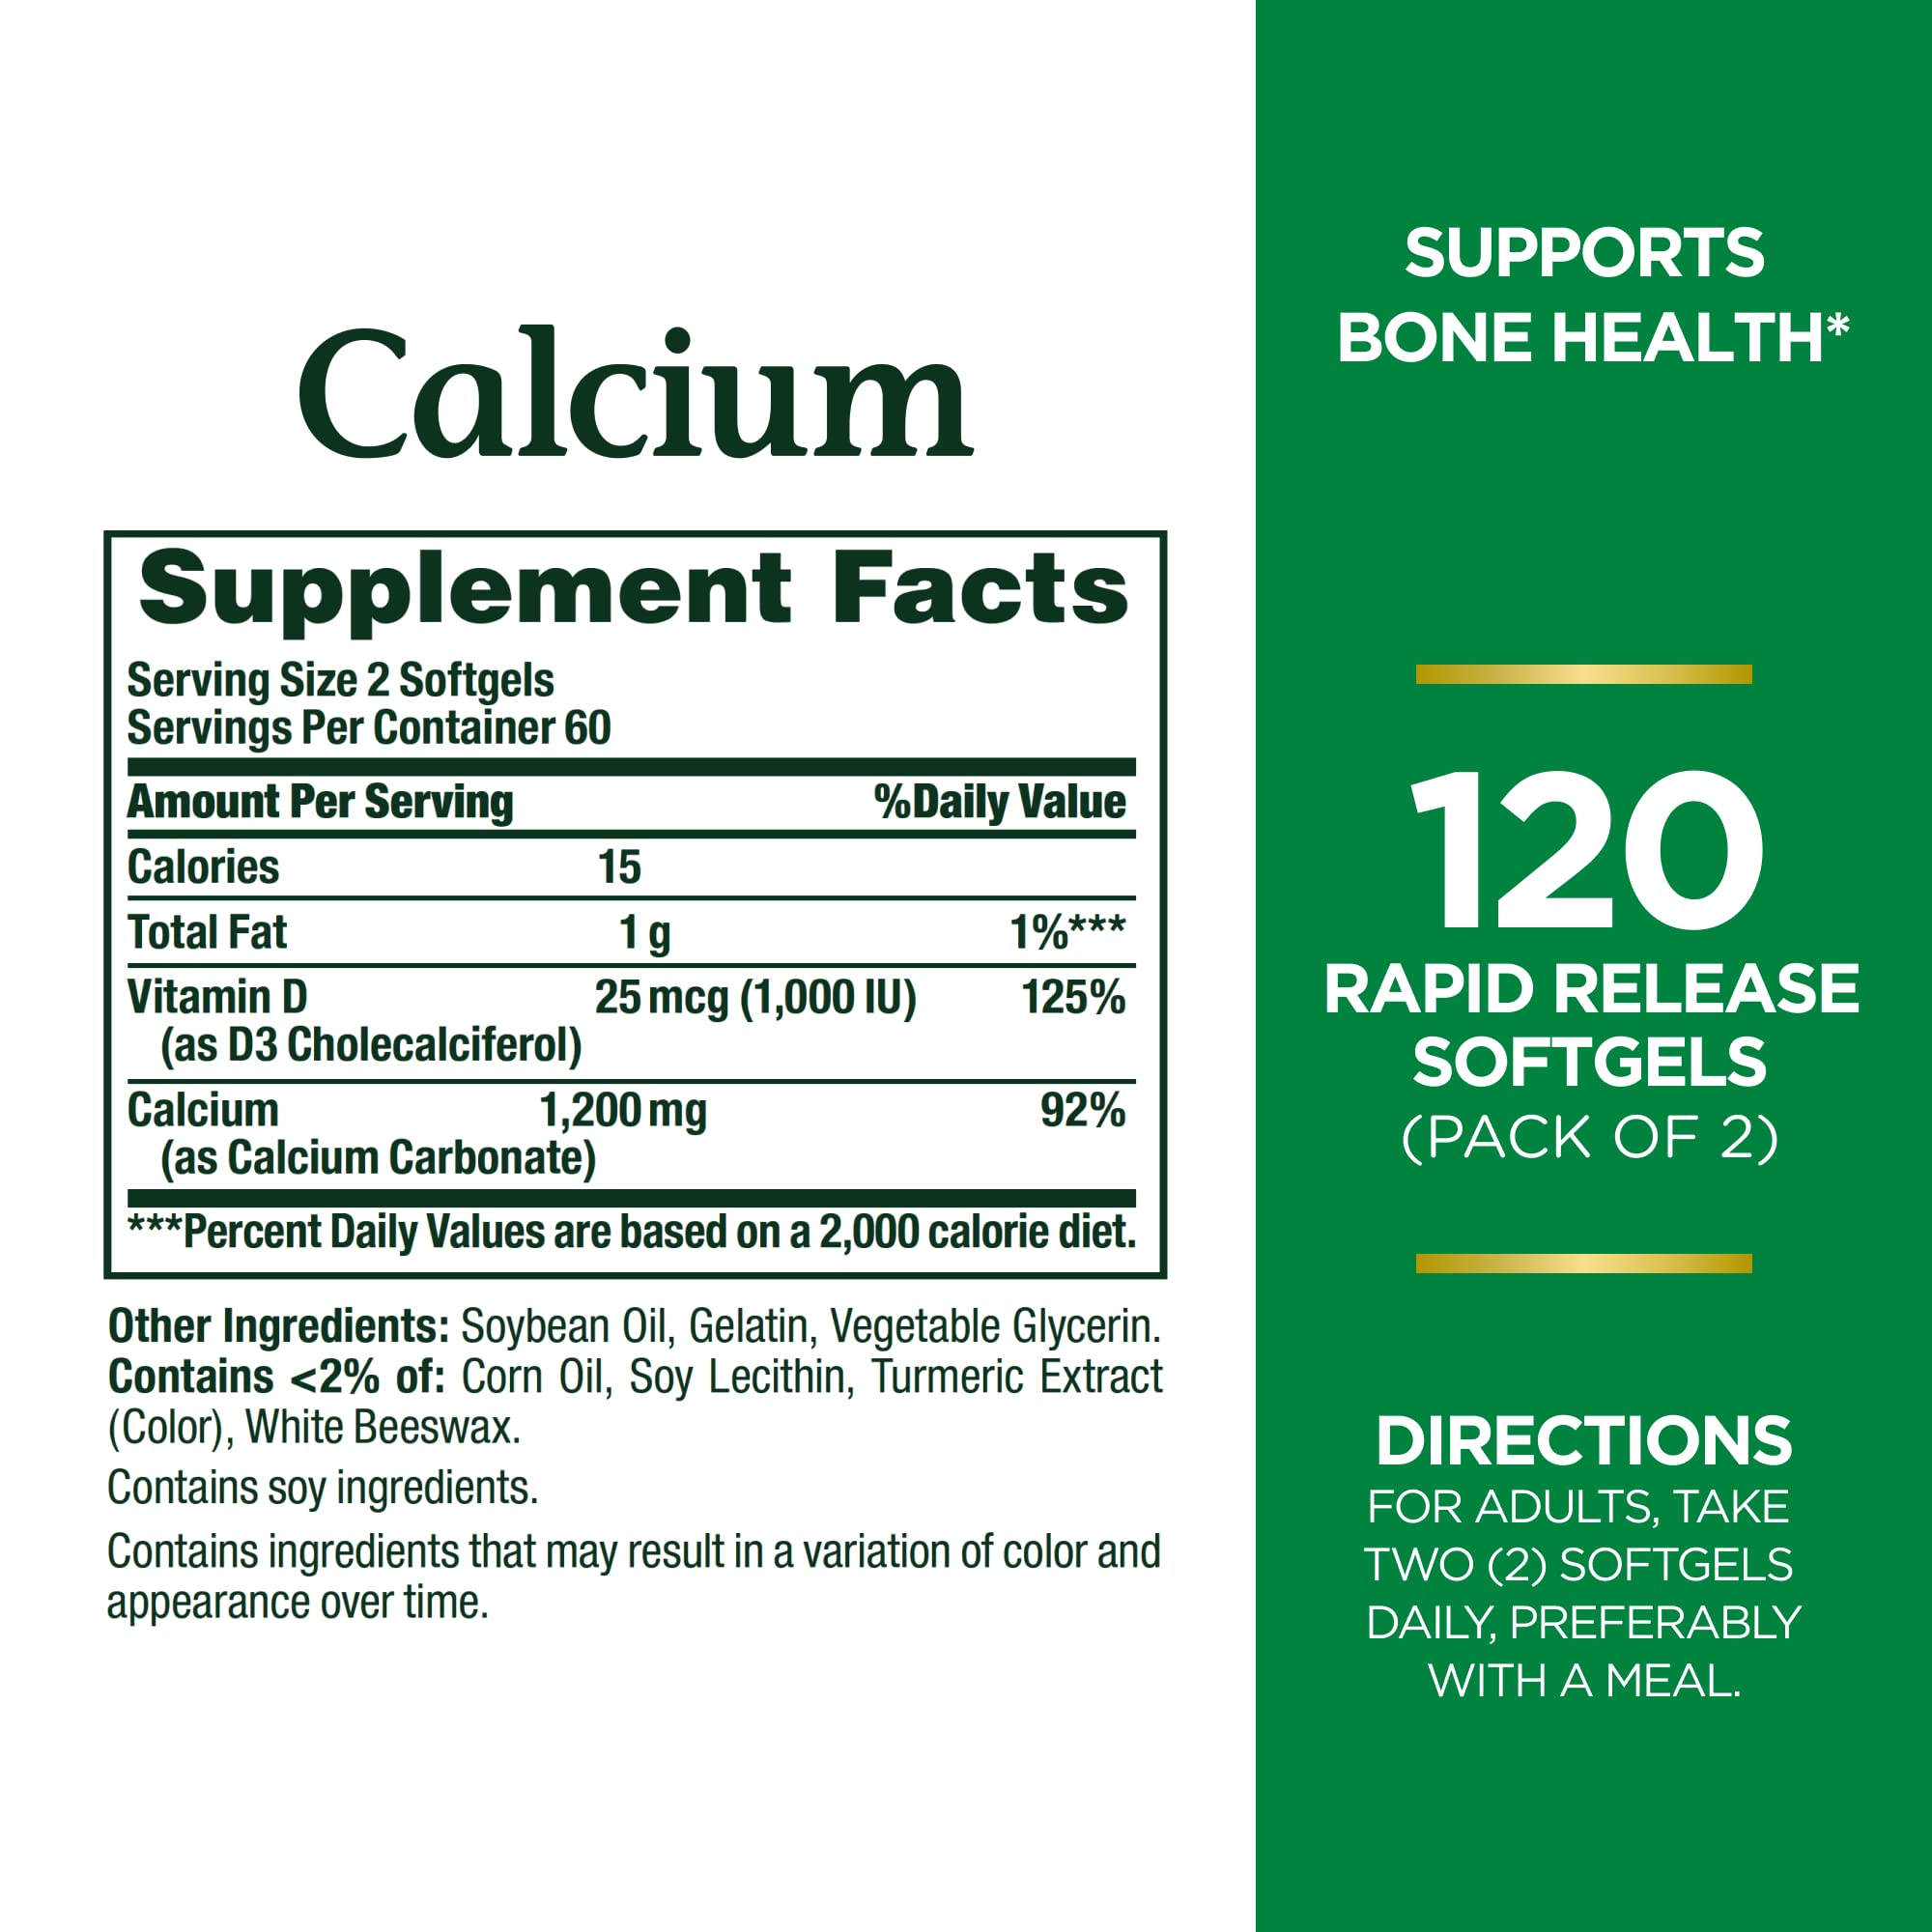 Nature’s Bounty Calcium Plus 1000 IU Vitamin D3, Immune Support & Bone Health, Softgels, 120 Ct (2-Pack)